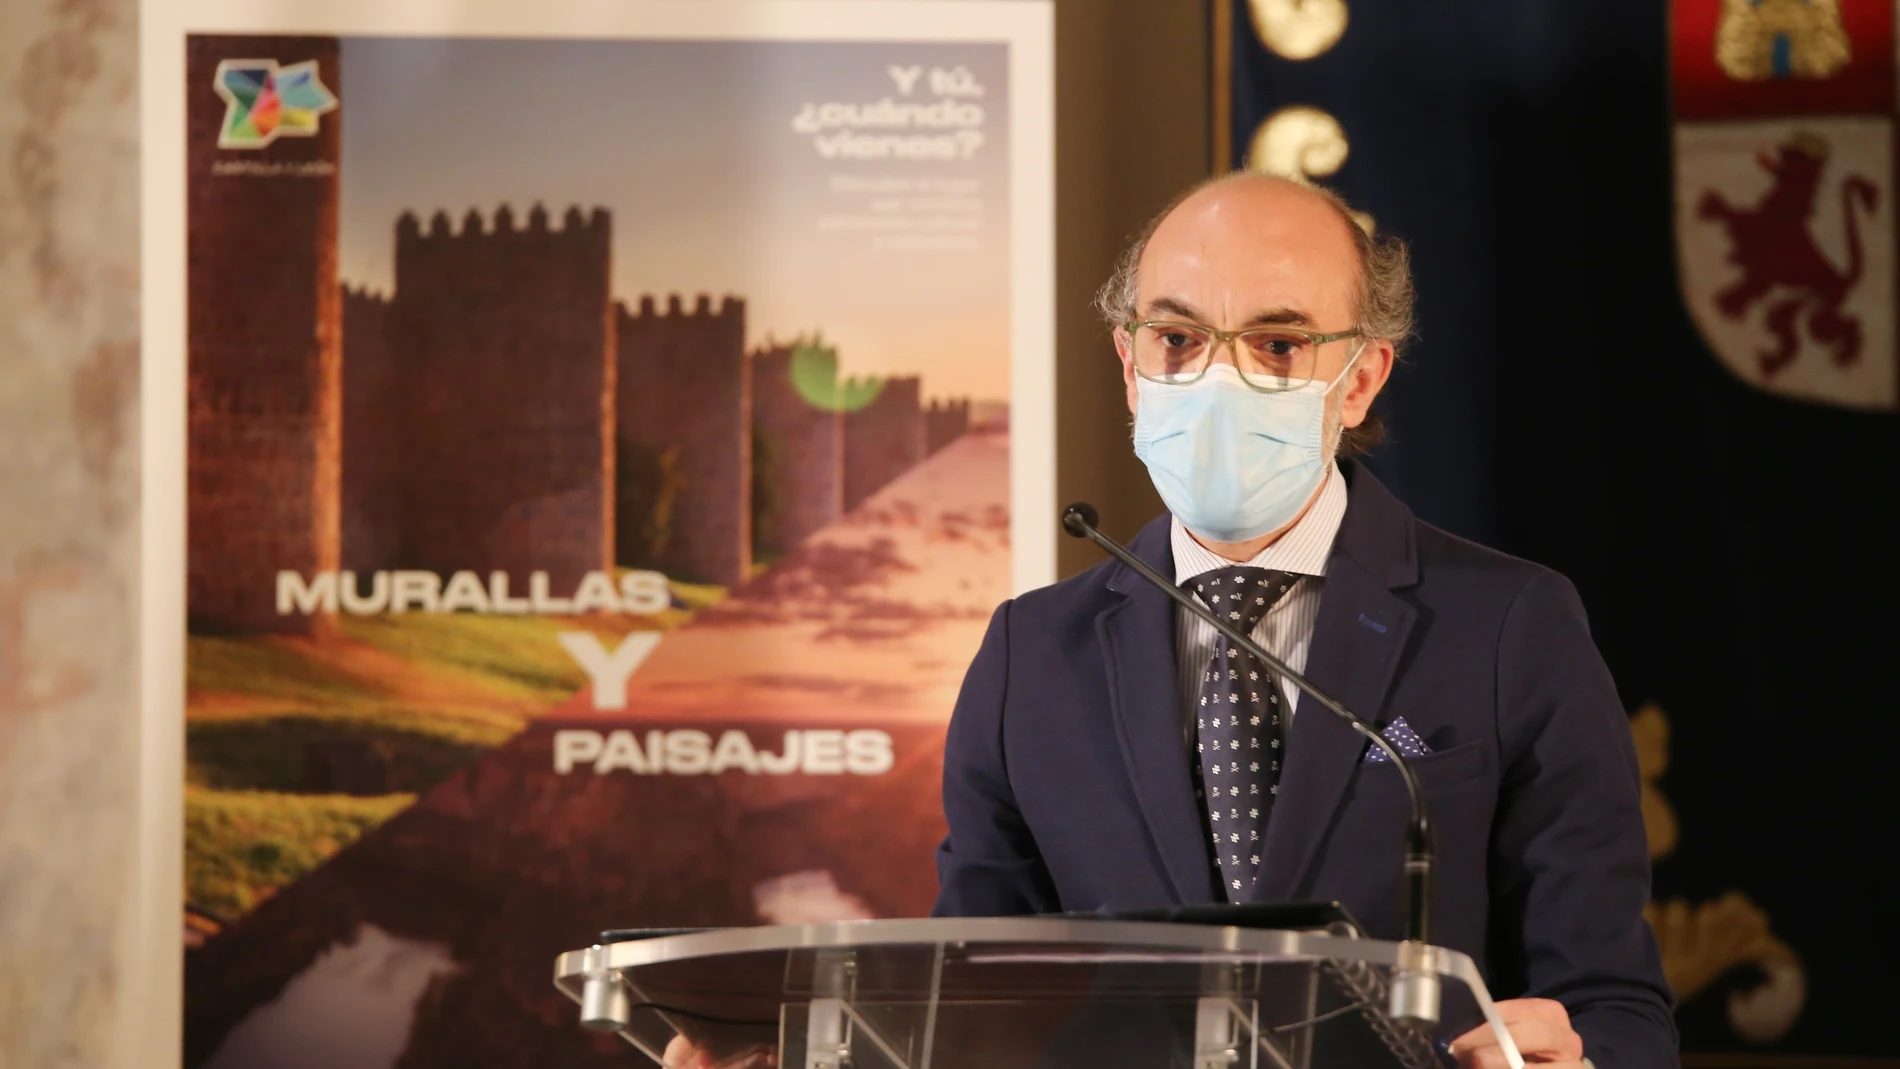 El consejero de Cultura y Turismo, Javier Ortega, presenta la campaña de promoción turística "Castilla Y Leon. Y tú ¿cuándo vienes?